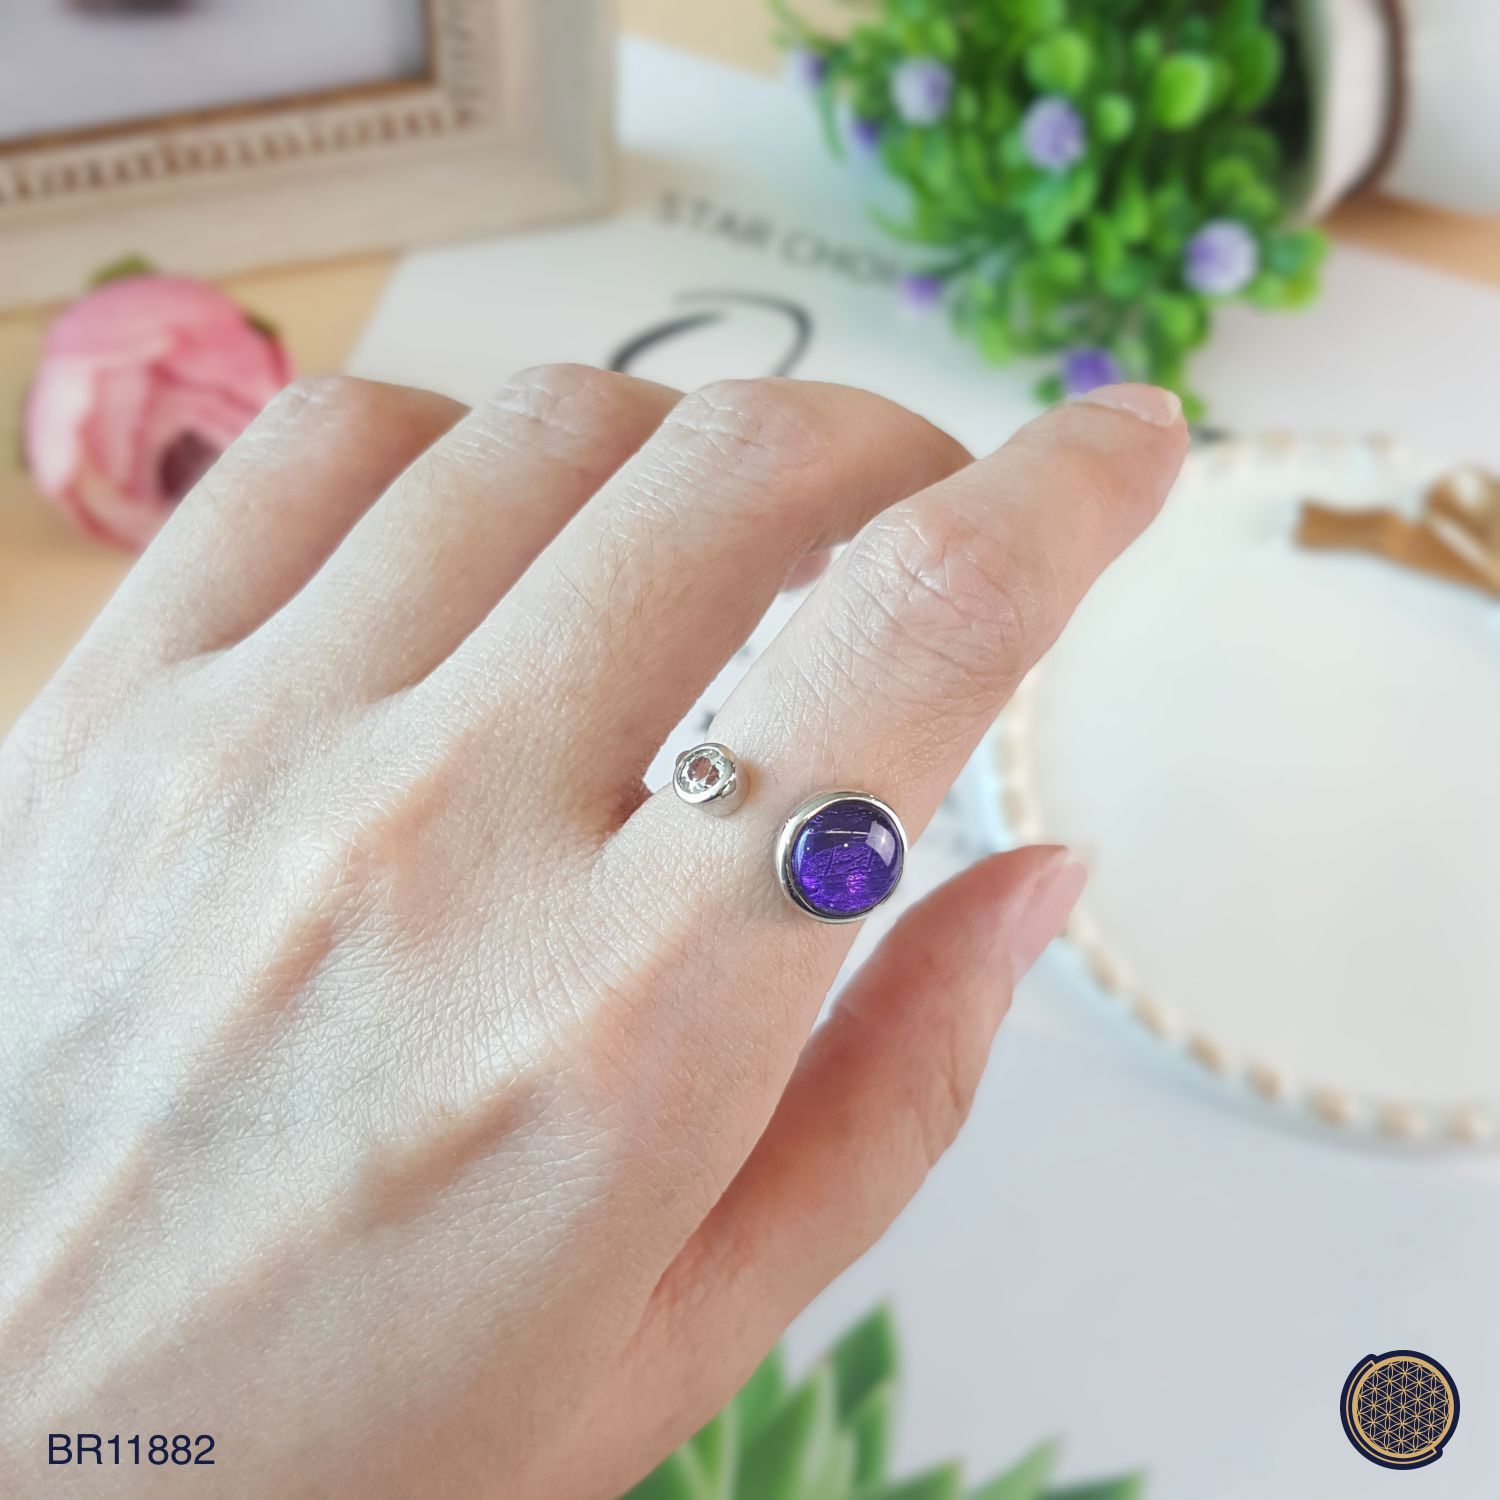 10mm 天铁圆形搭配白水晶-紫色戒指